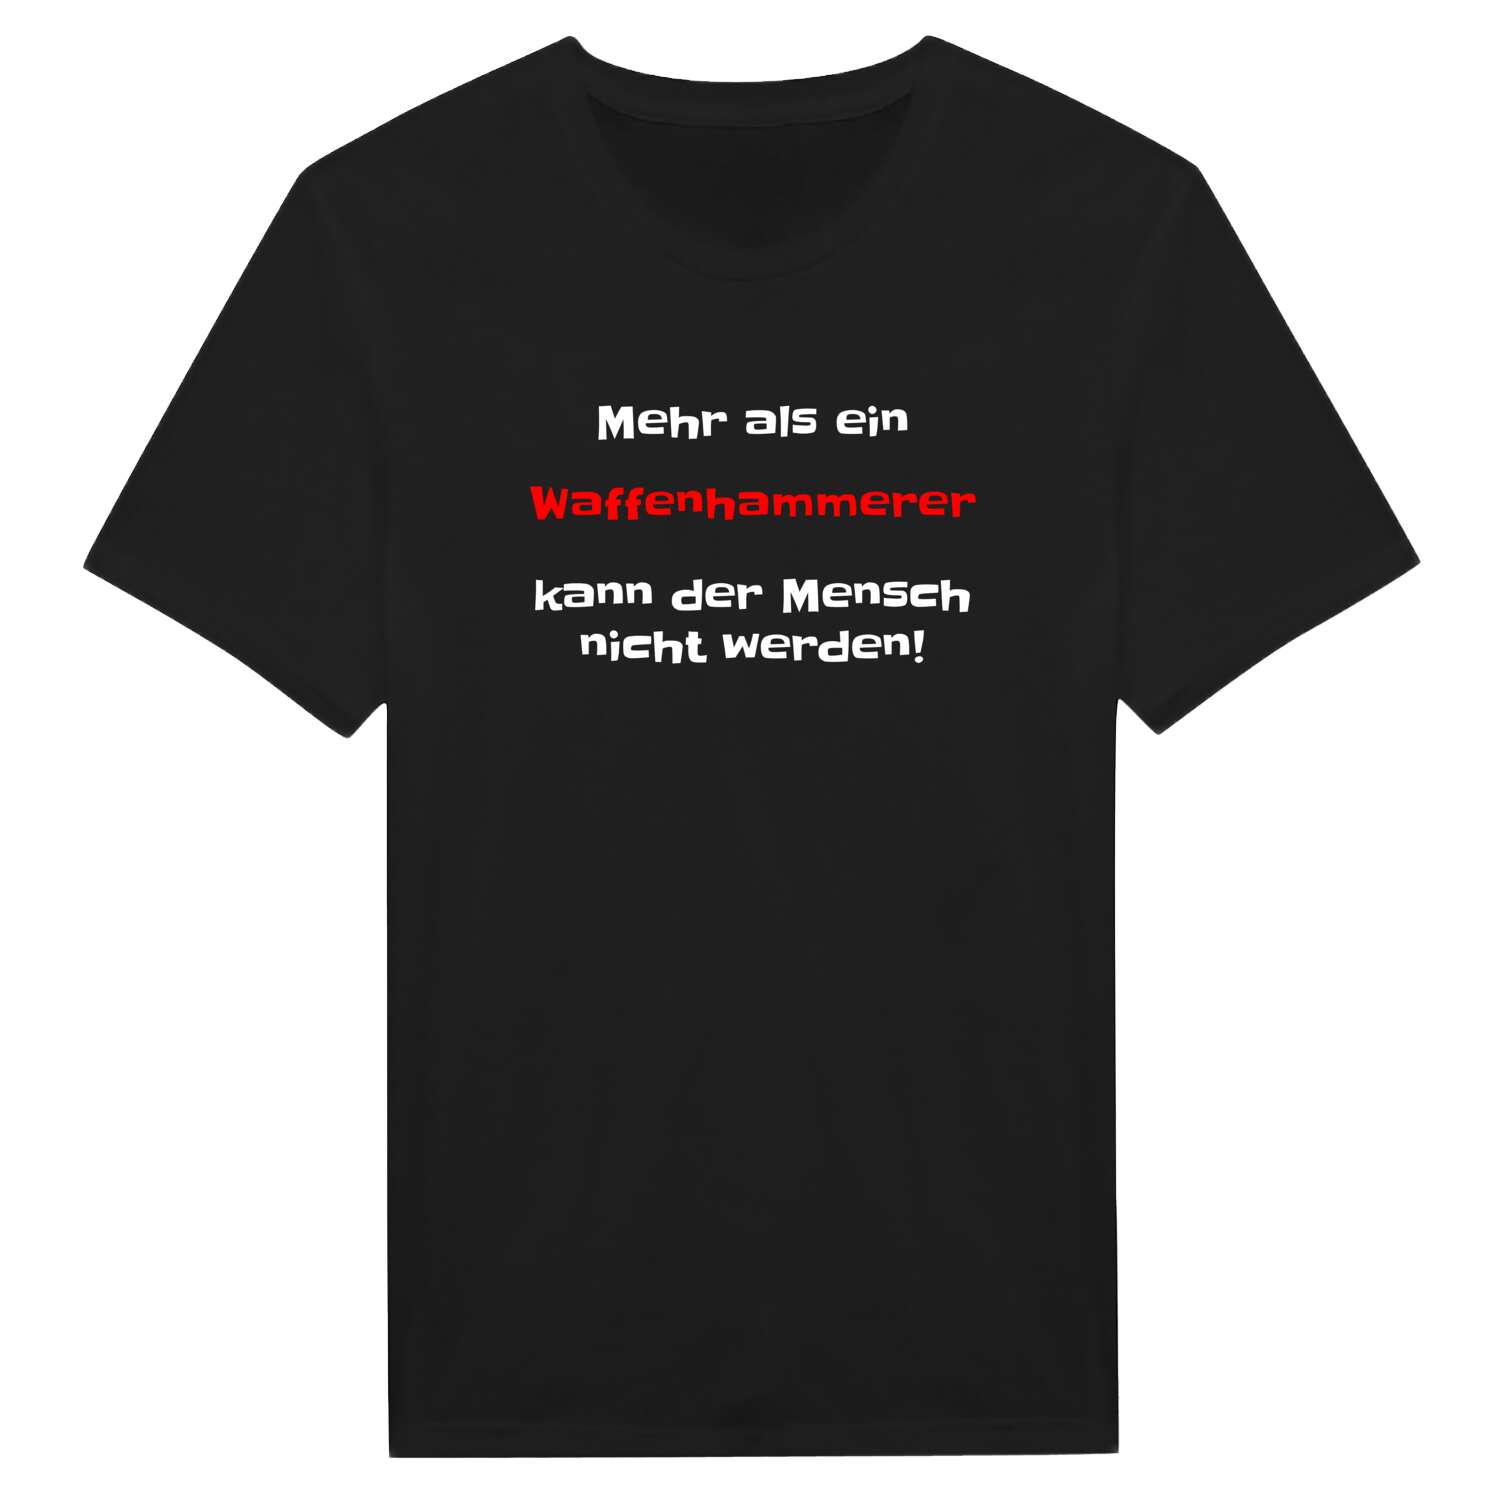 Waffenhammer T-Shirt »Mehr als ein«